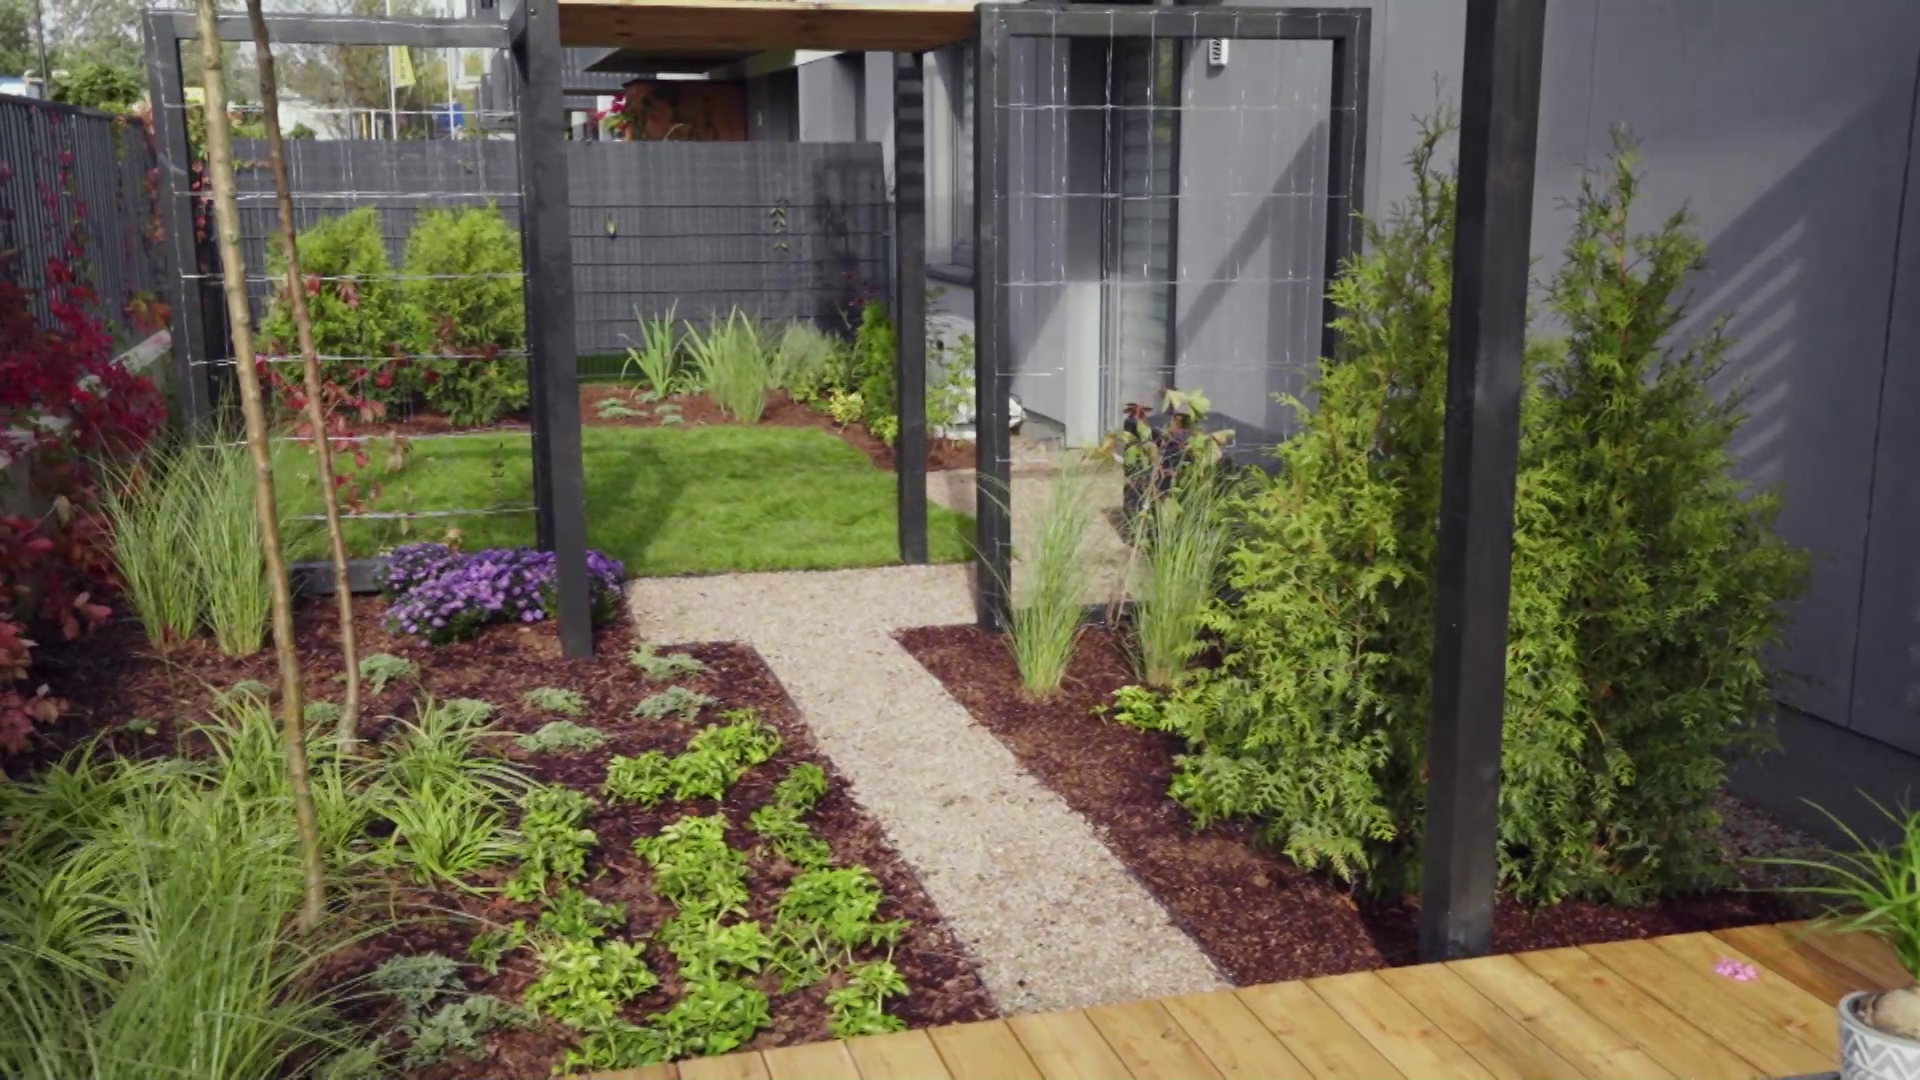 "Polowanie na ogród": prosty w obsłudze i dający prywatność ogródek